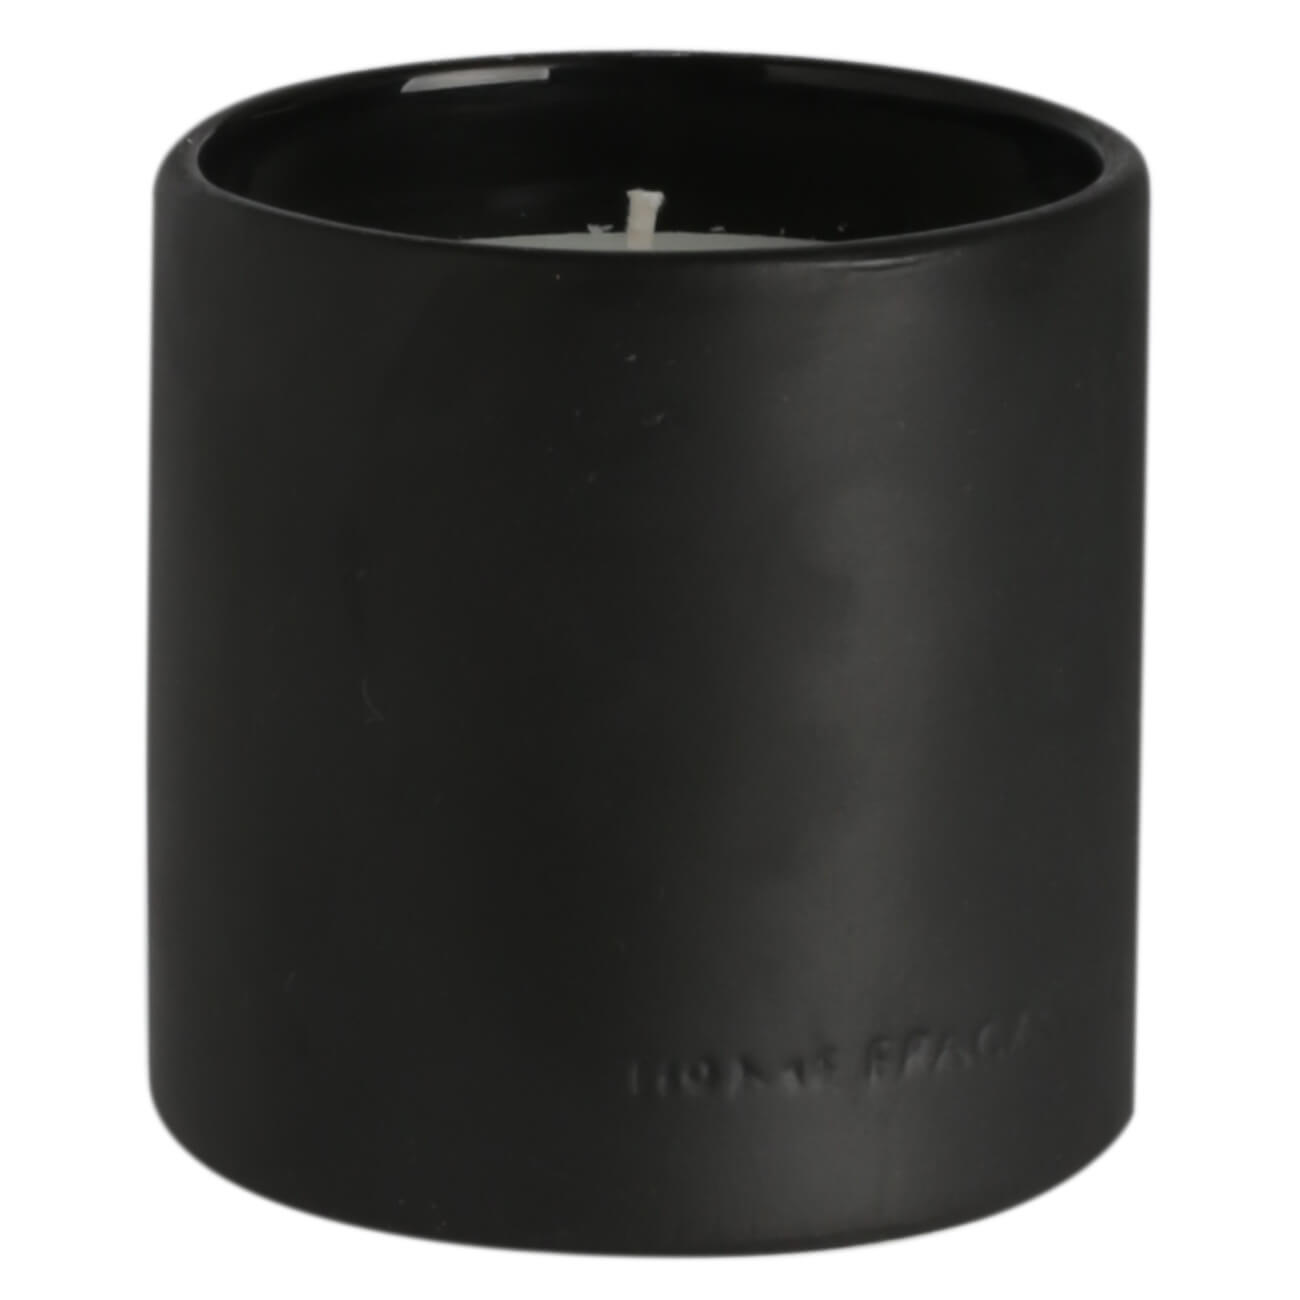 Свеча ароматическая, 9 см, в подсвечнике, керамика, черная, Black forest, B&W тарелка обеденная стекло 26 см квадратная carine black luminarc d2373 h3666 l9817 черная